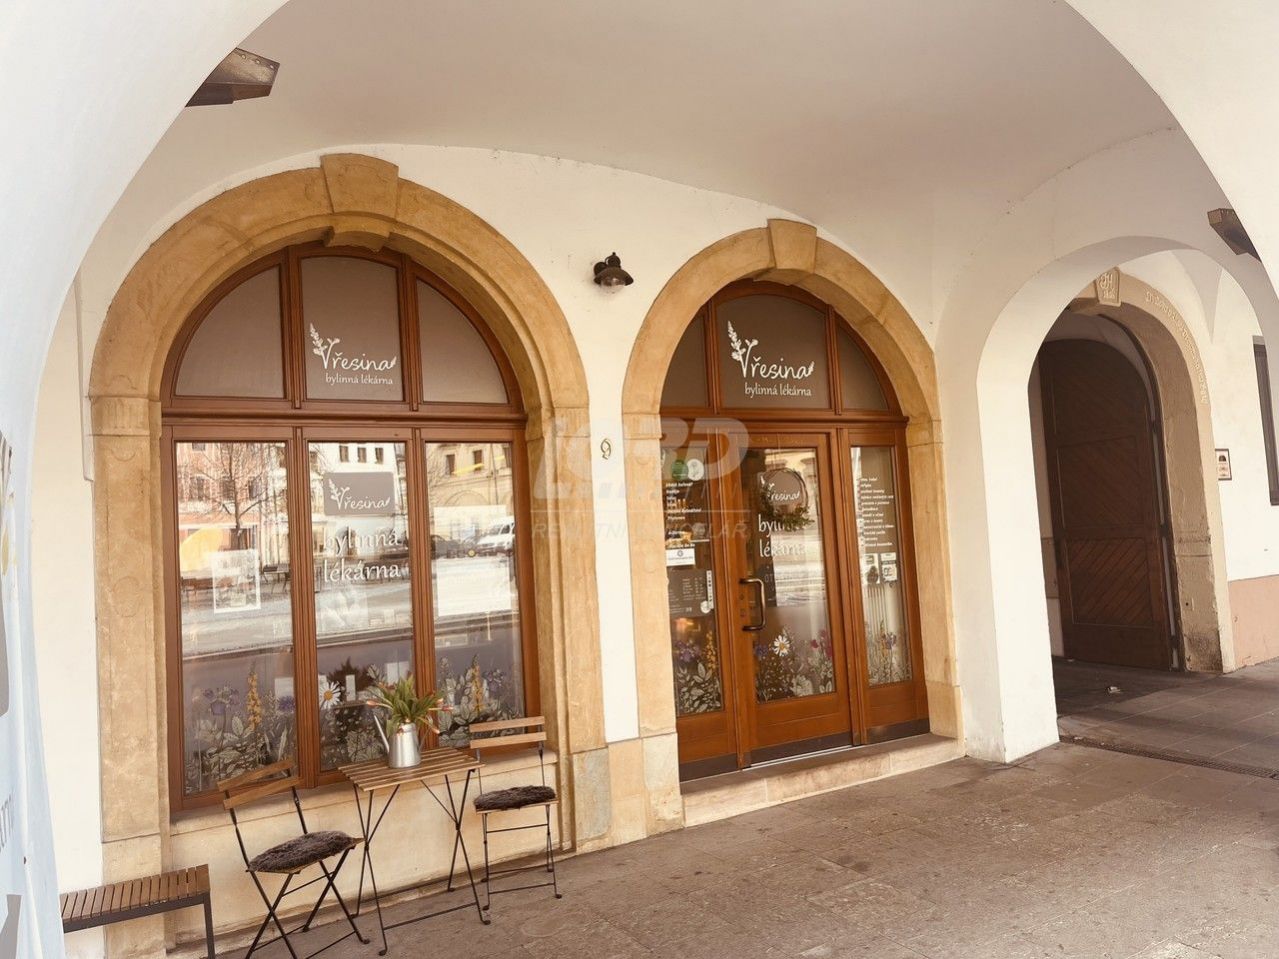 Prodej zavedeného obchodu  bylinné lékárny - v historickém centru Hradce Králové, obrázek č. 1